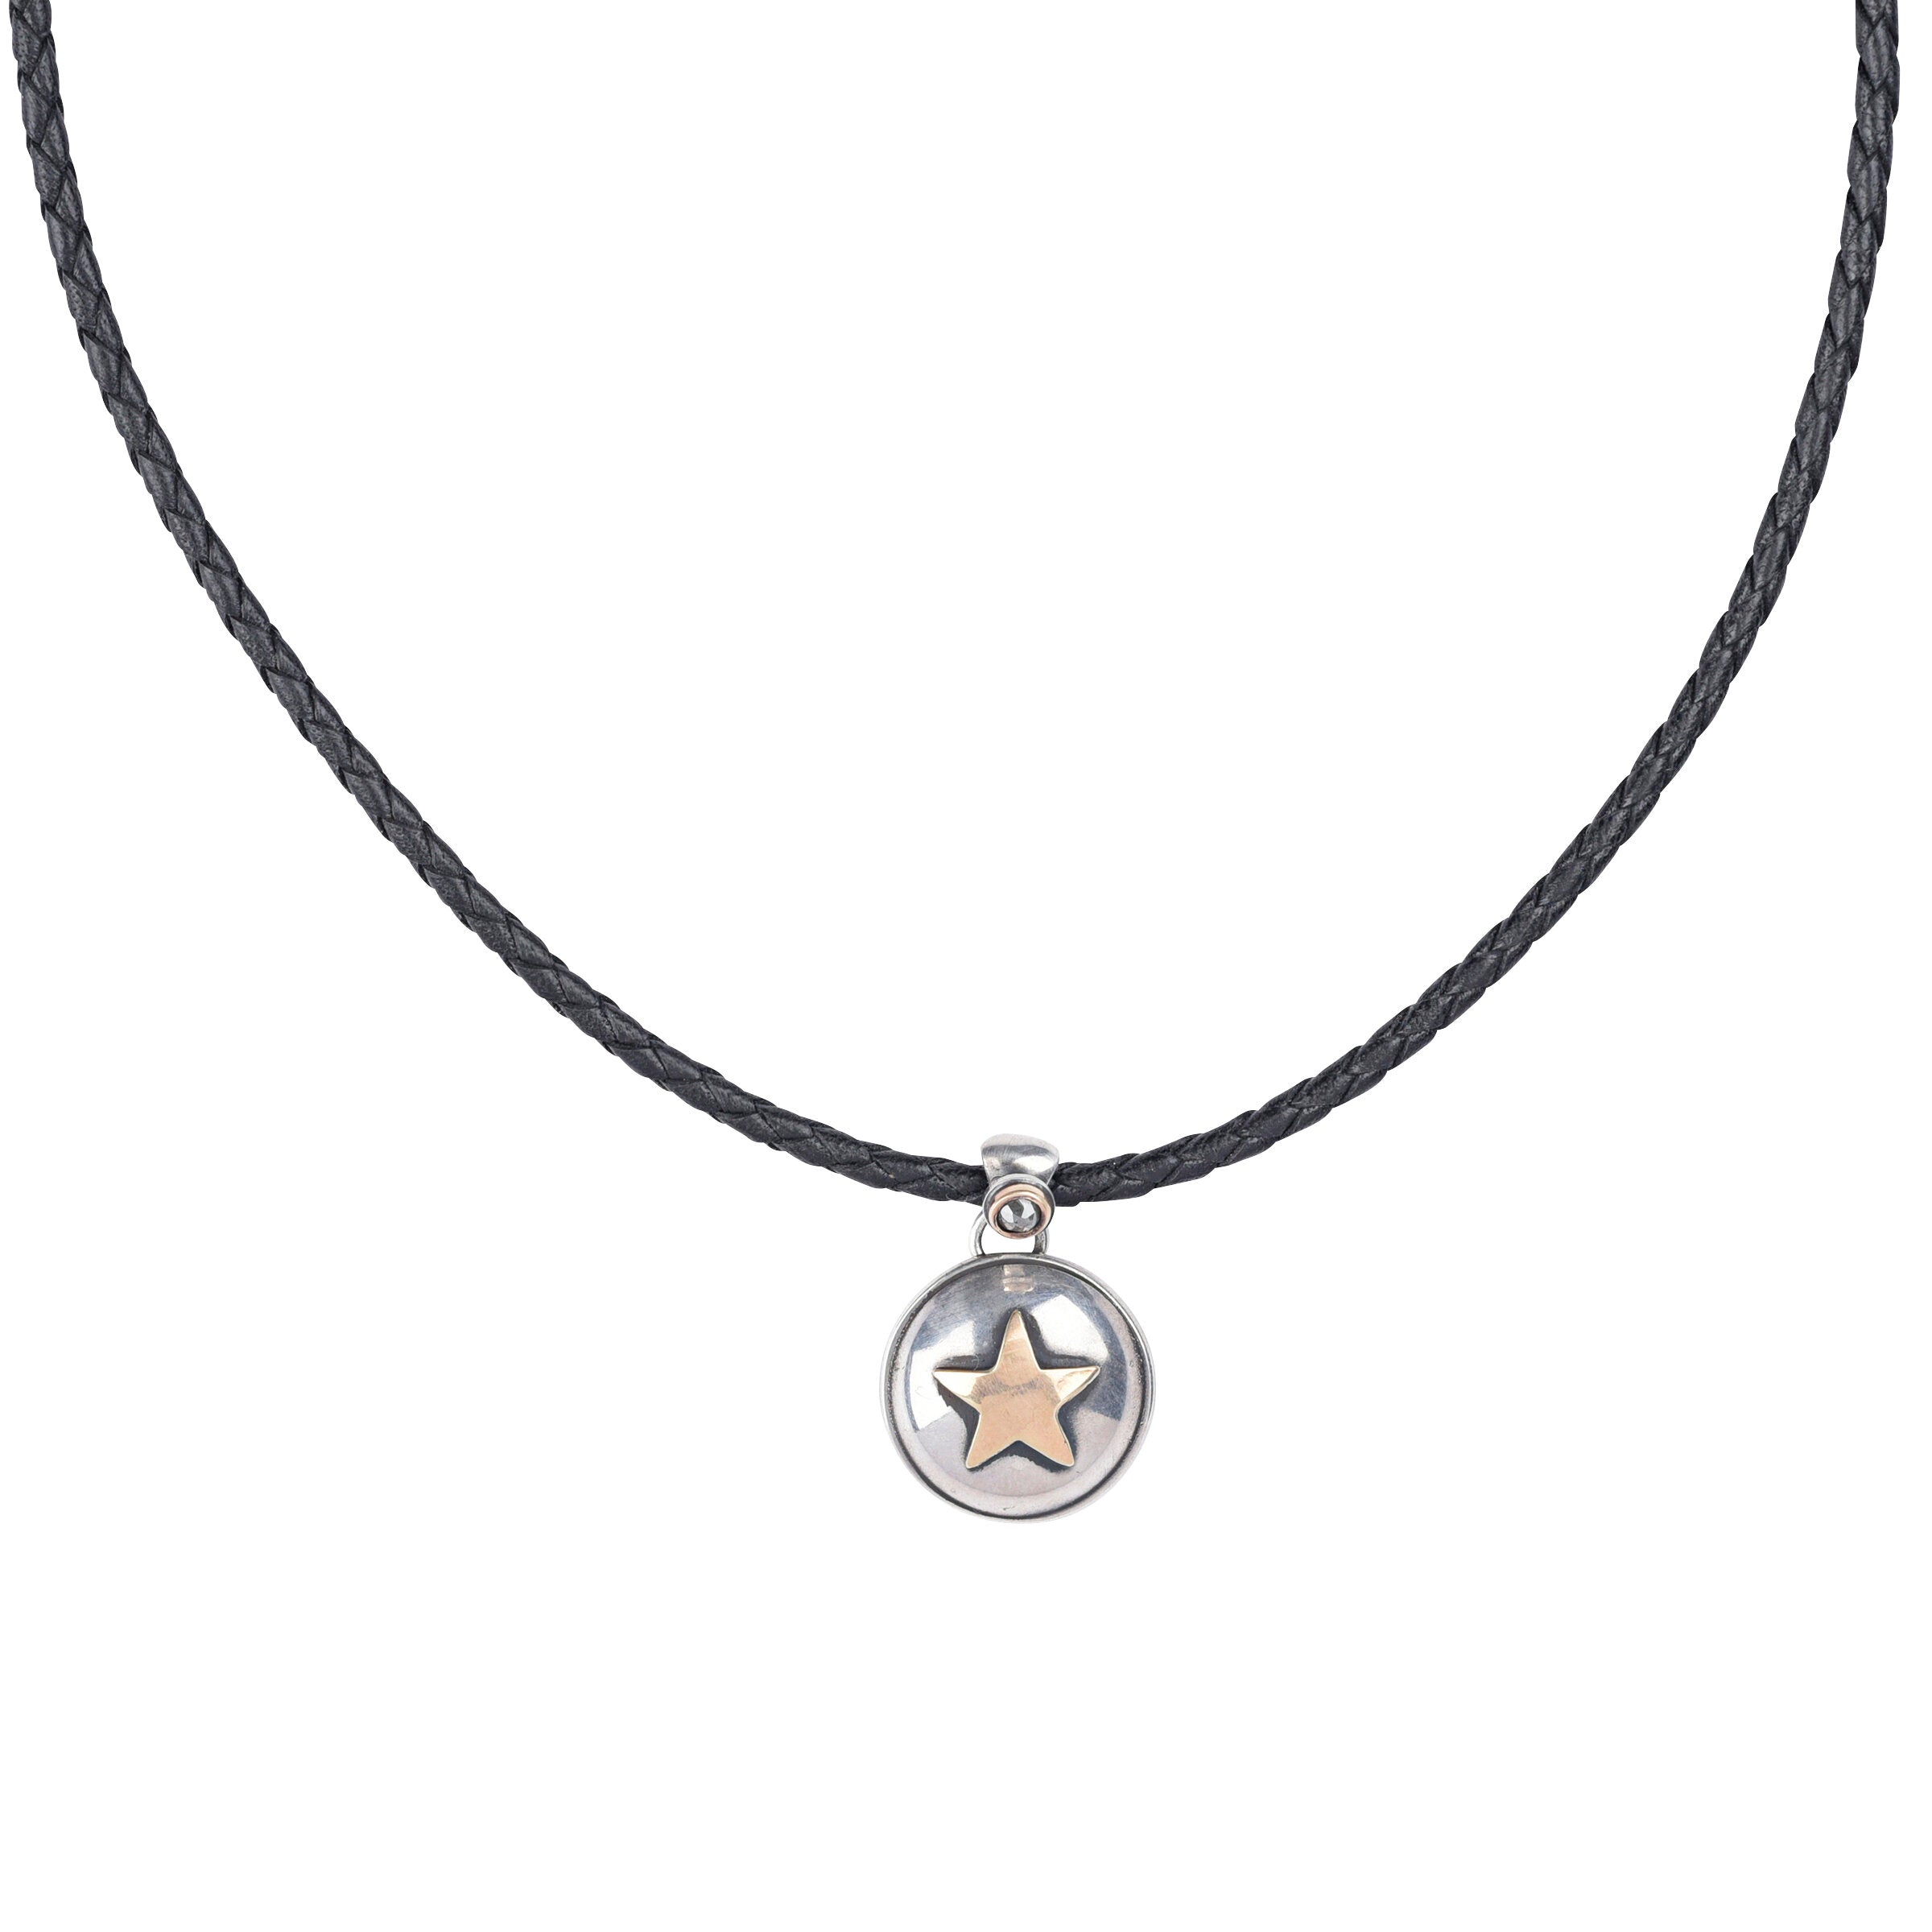 Dennis Hogan Starlight Necklace